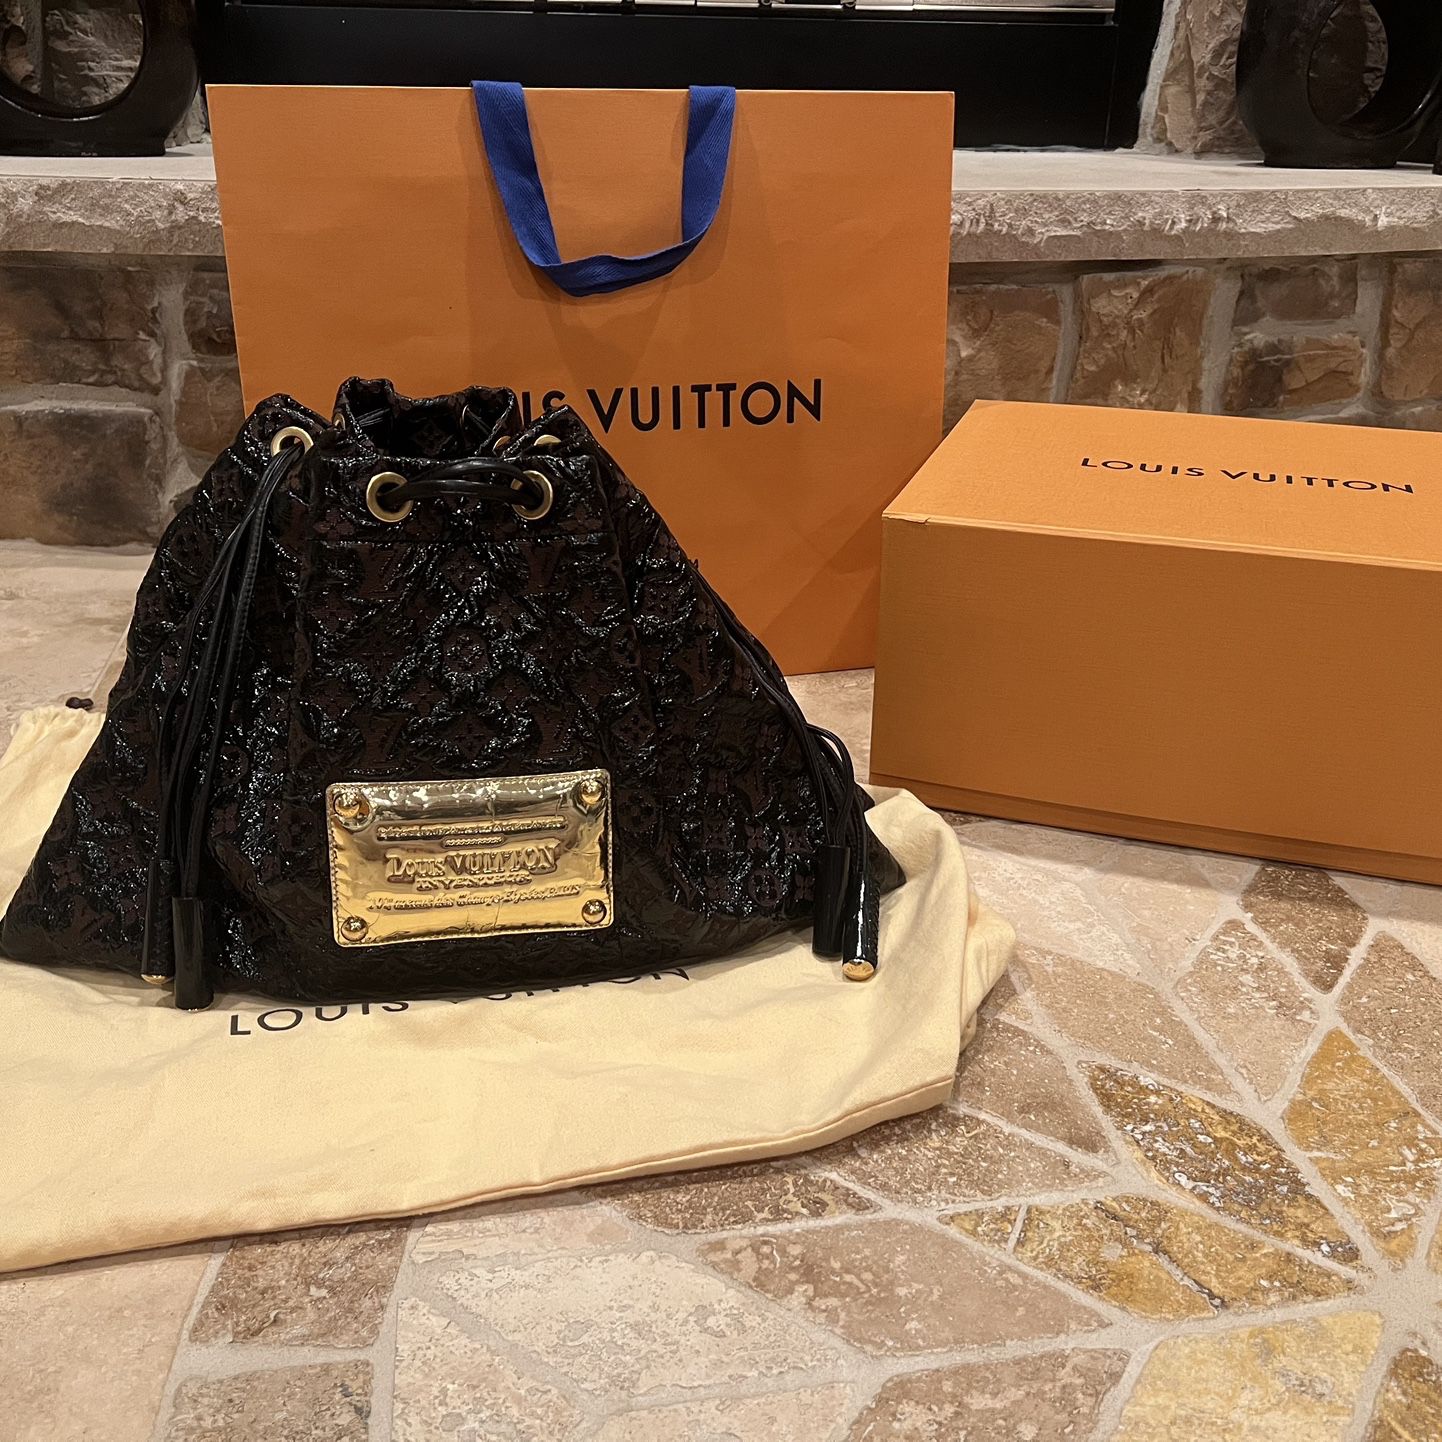 Louis Vuitton, Bags, Louis Vuitton Inventeur Shoulder Bag